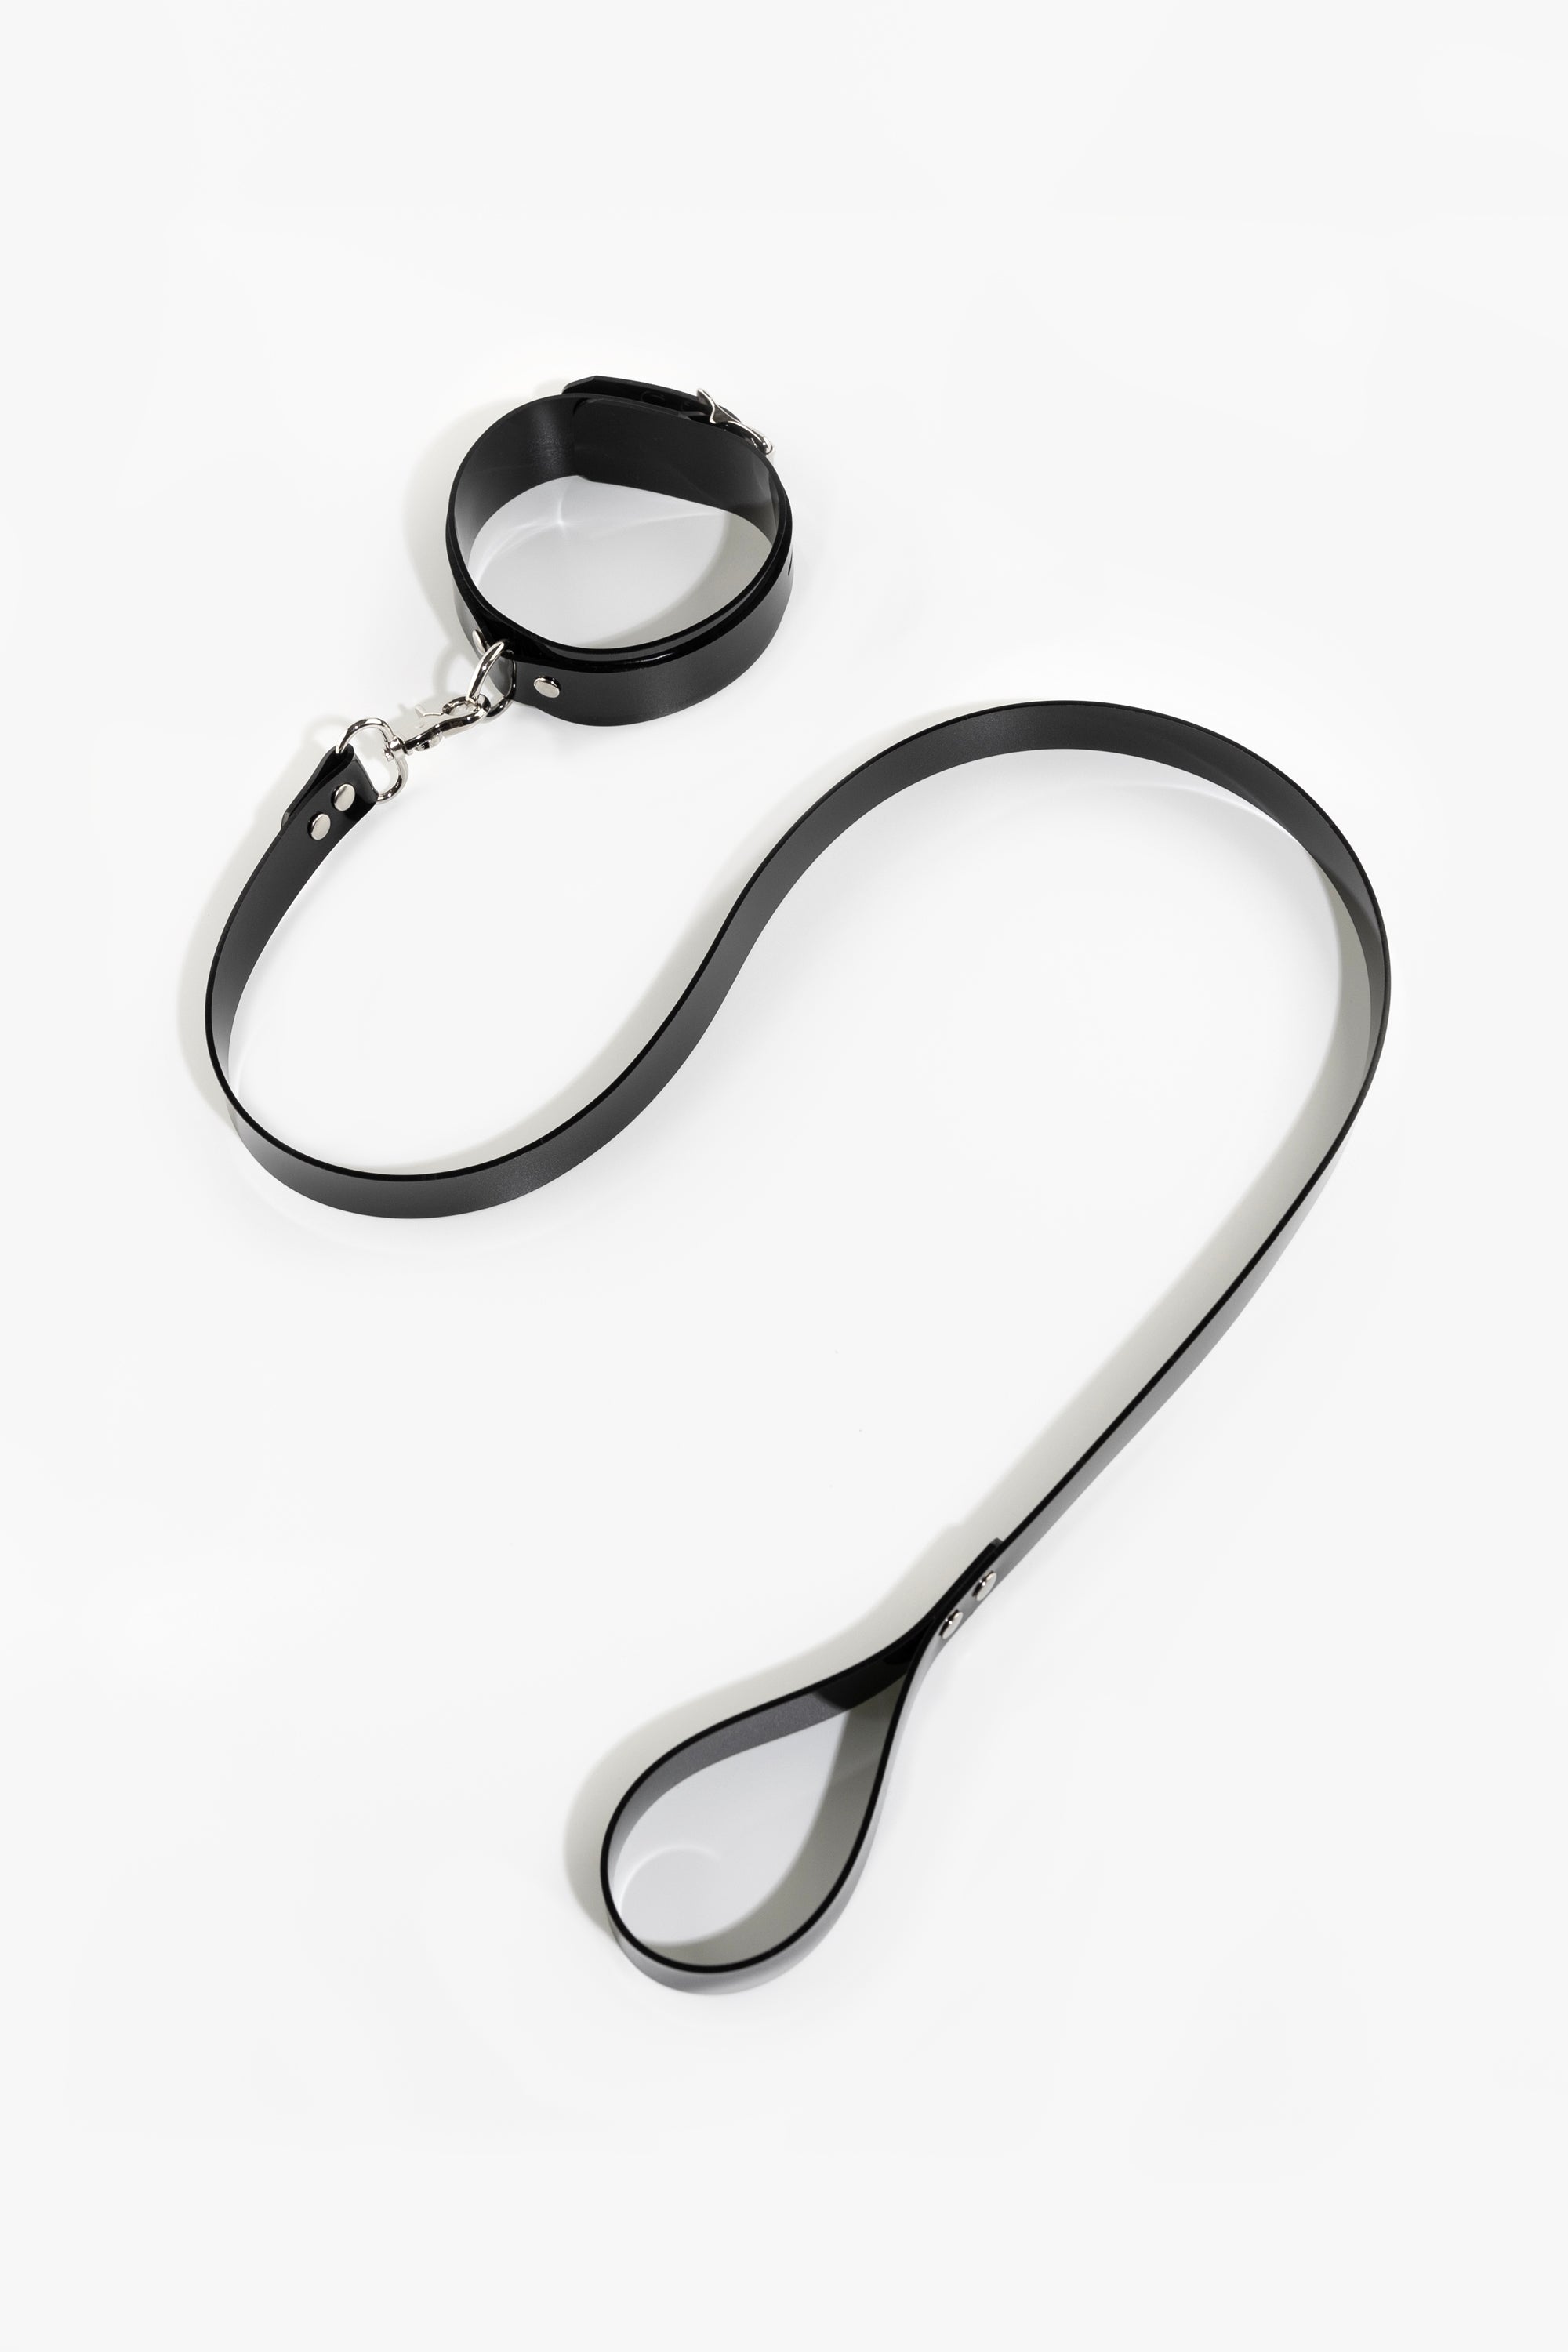 PVC leash, black/chrome